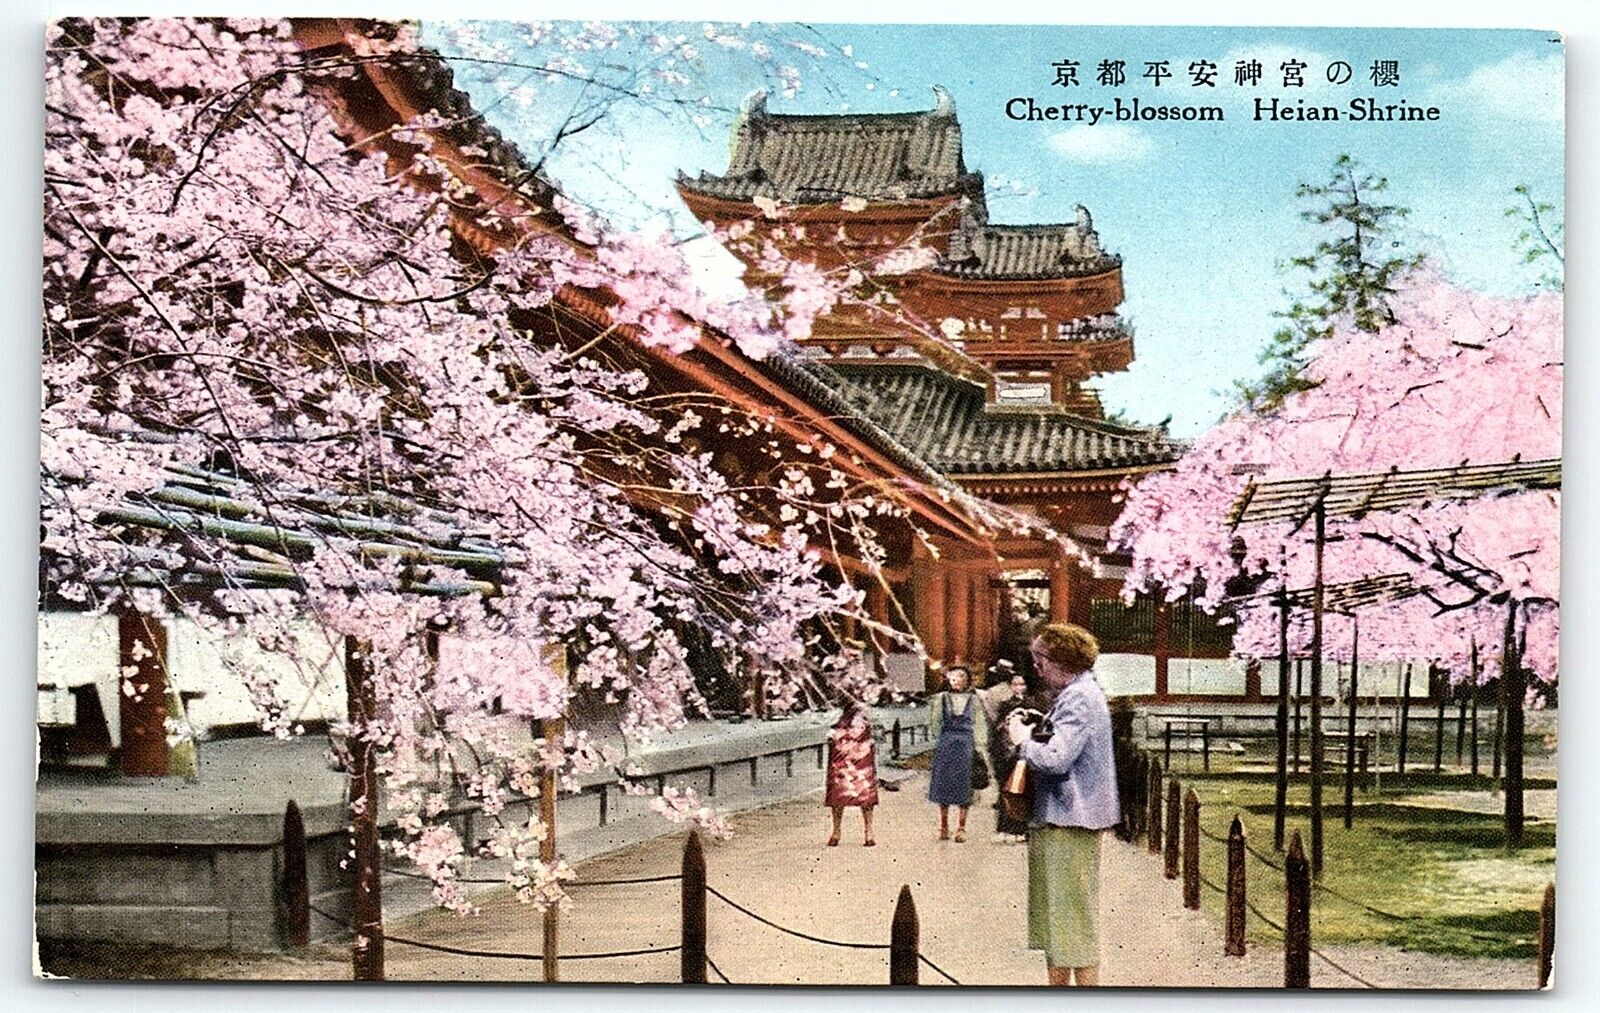 1920s JAPAN HEIAN SHRINE CHERRY BLOSSOM TEMPLE TOURISTS POSTCARD P1473